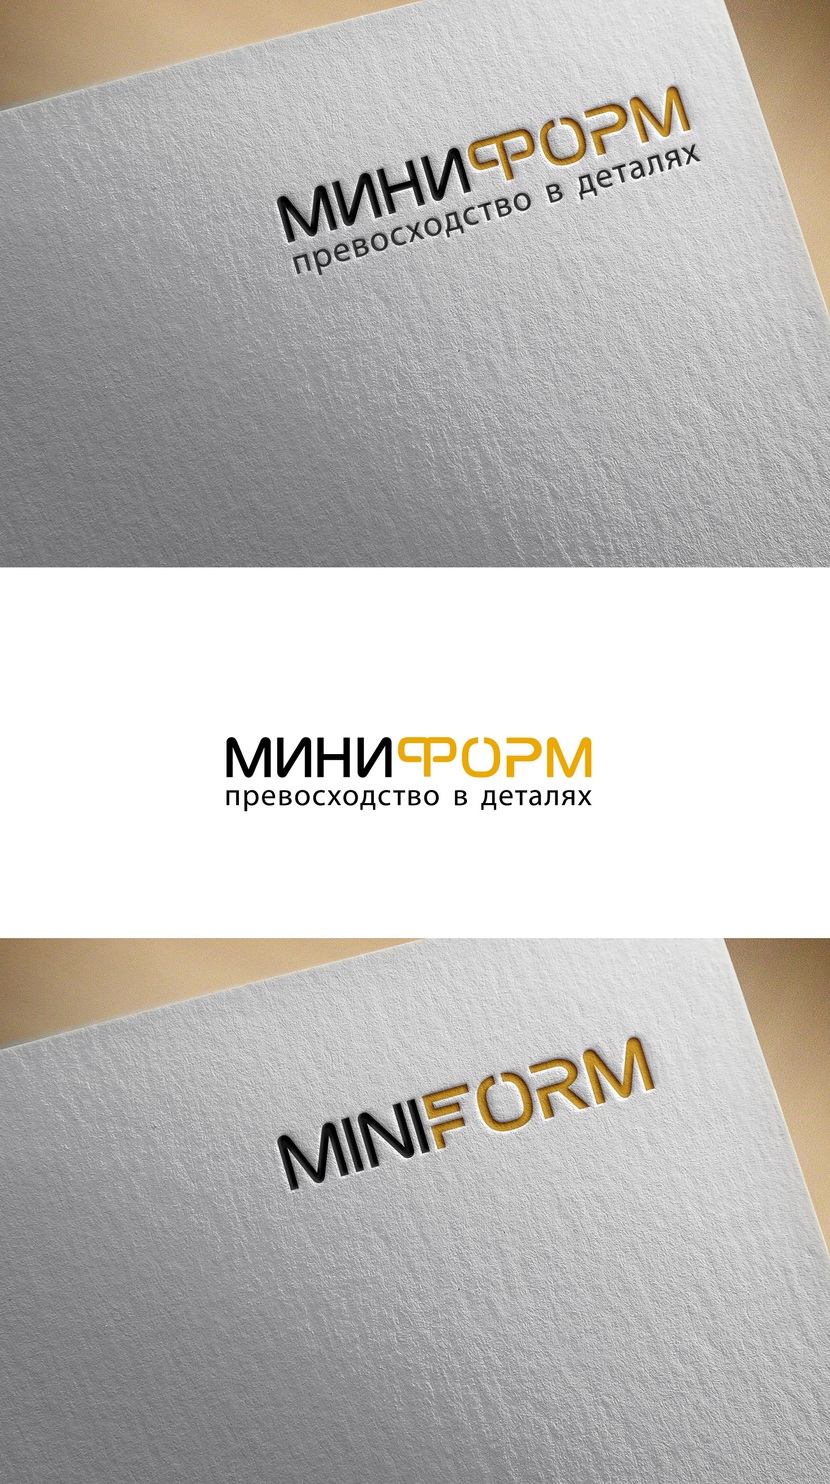 Логотип и фирменный стиль для разработчика и производителя комплектующих для офисной мебели MINIFORM